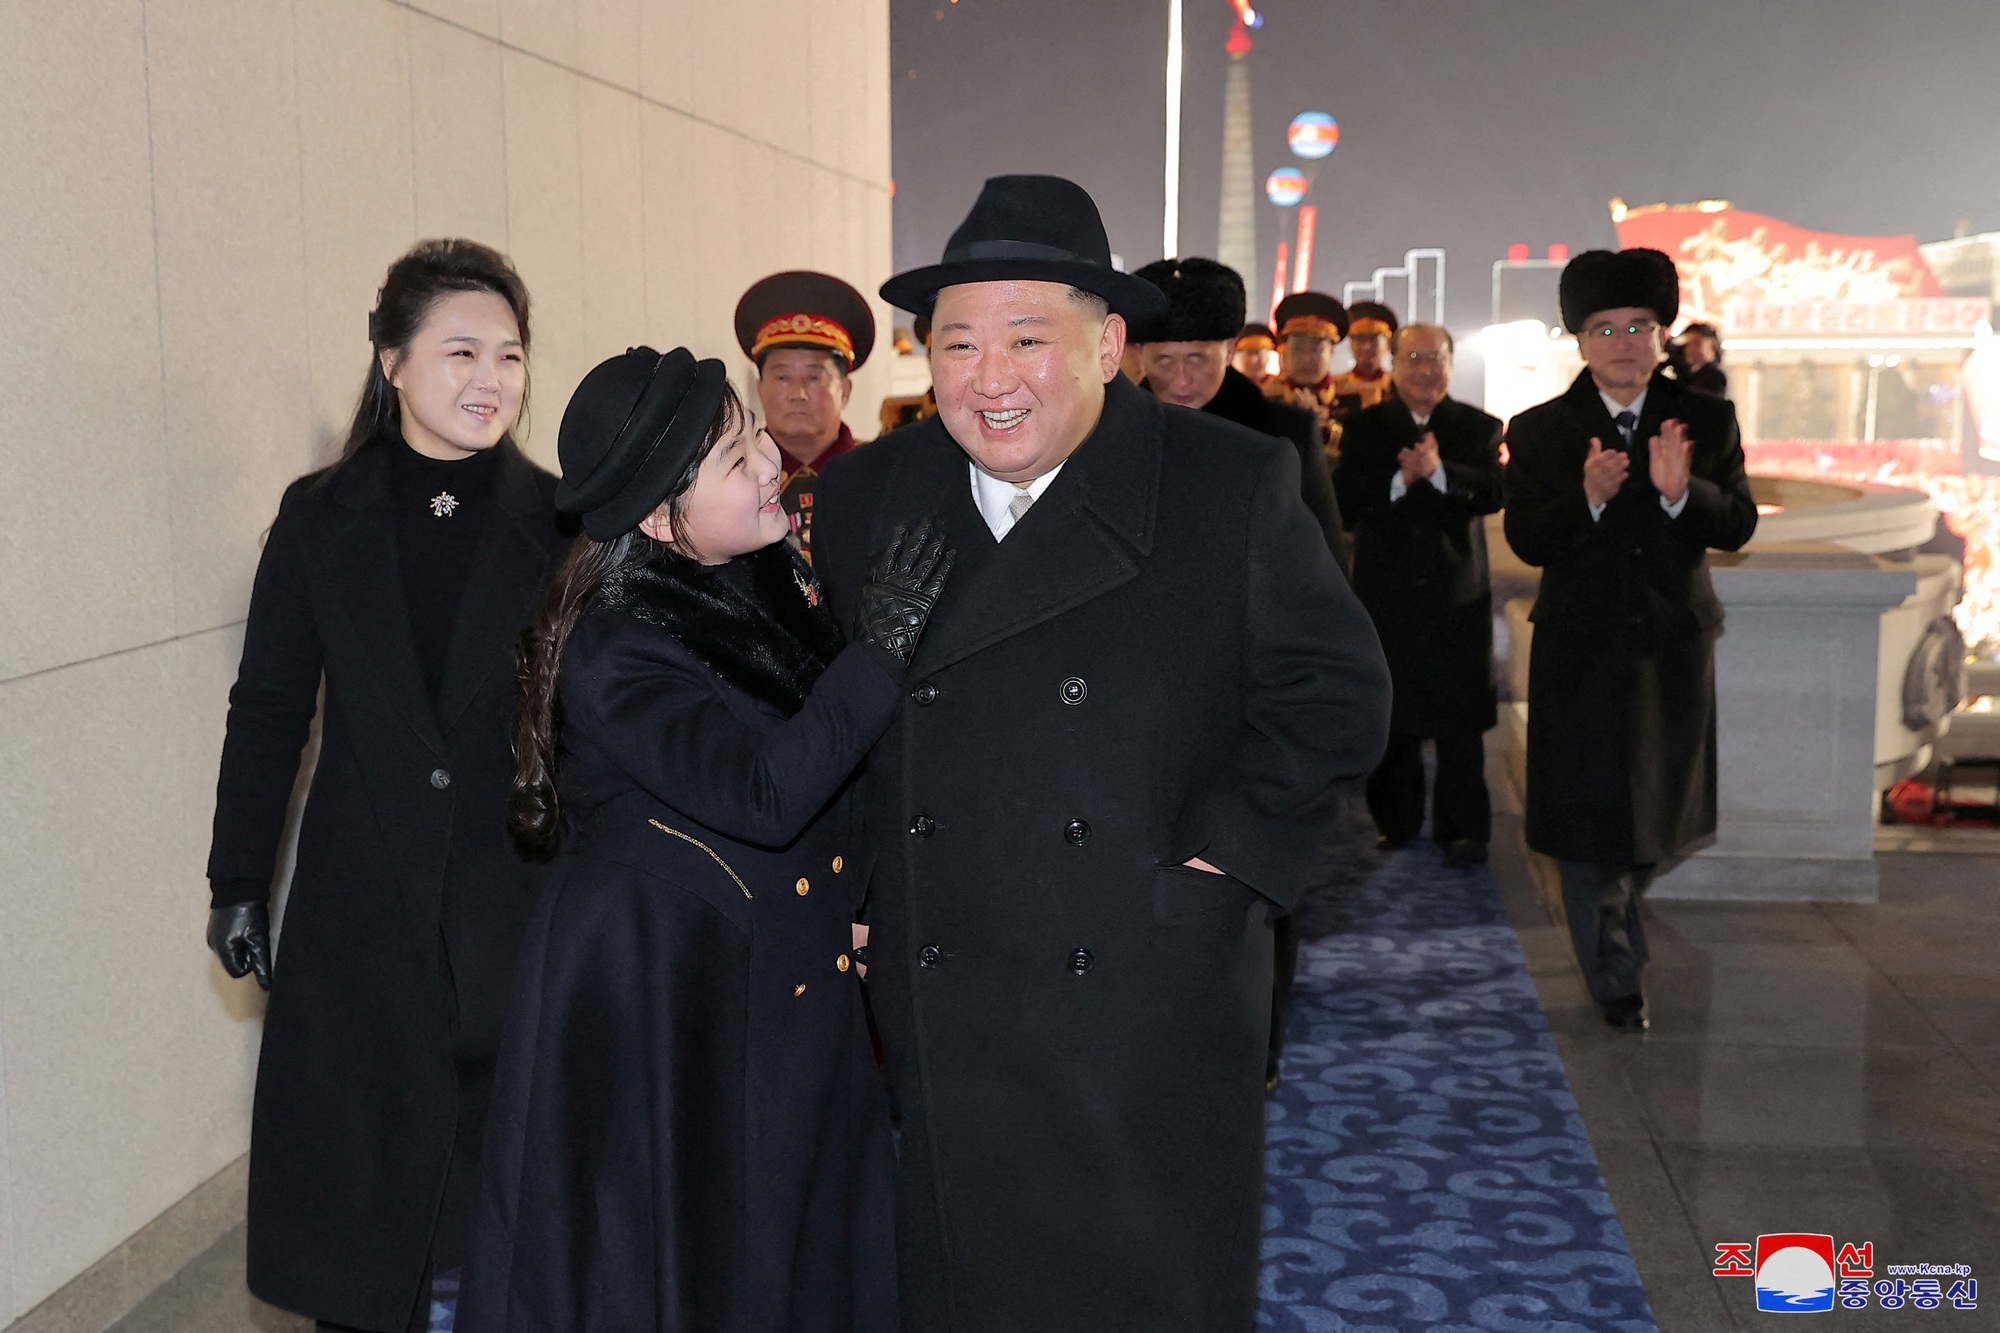 Con gái ông Kim Jong-un xuất hiện cùng cha tại cuộc diễu hành quân sự lớn - Ảnh 1.